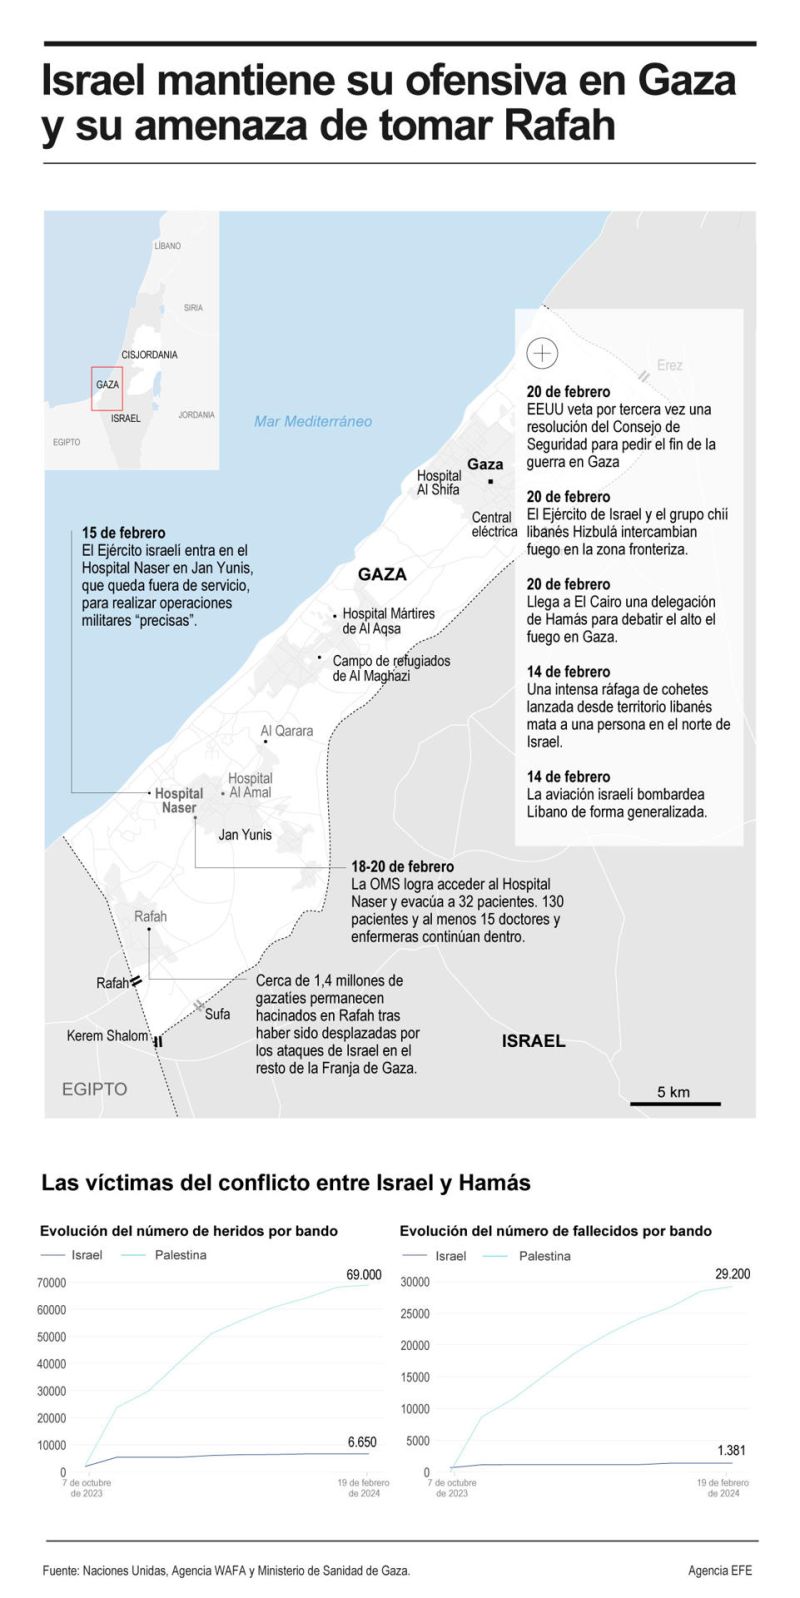 Israel mantiene la ofensiva en Gaza y su amenaza de tomar Rafah 01 200224